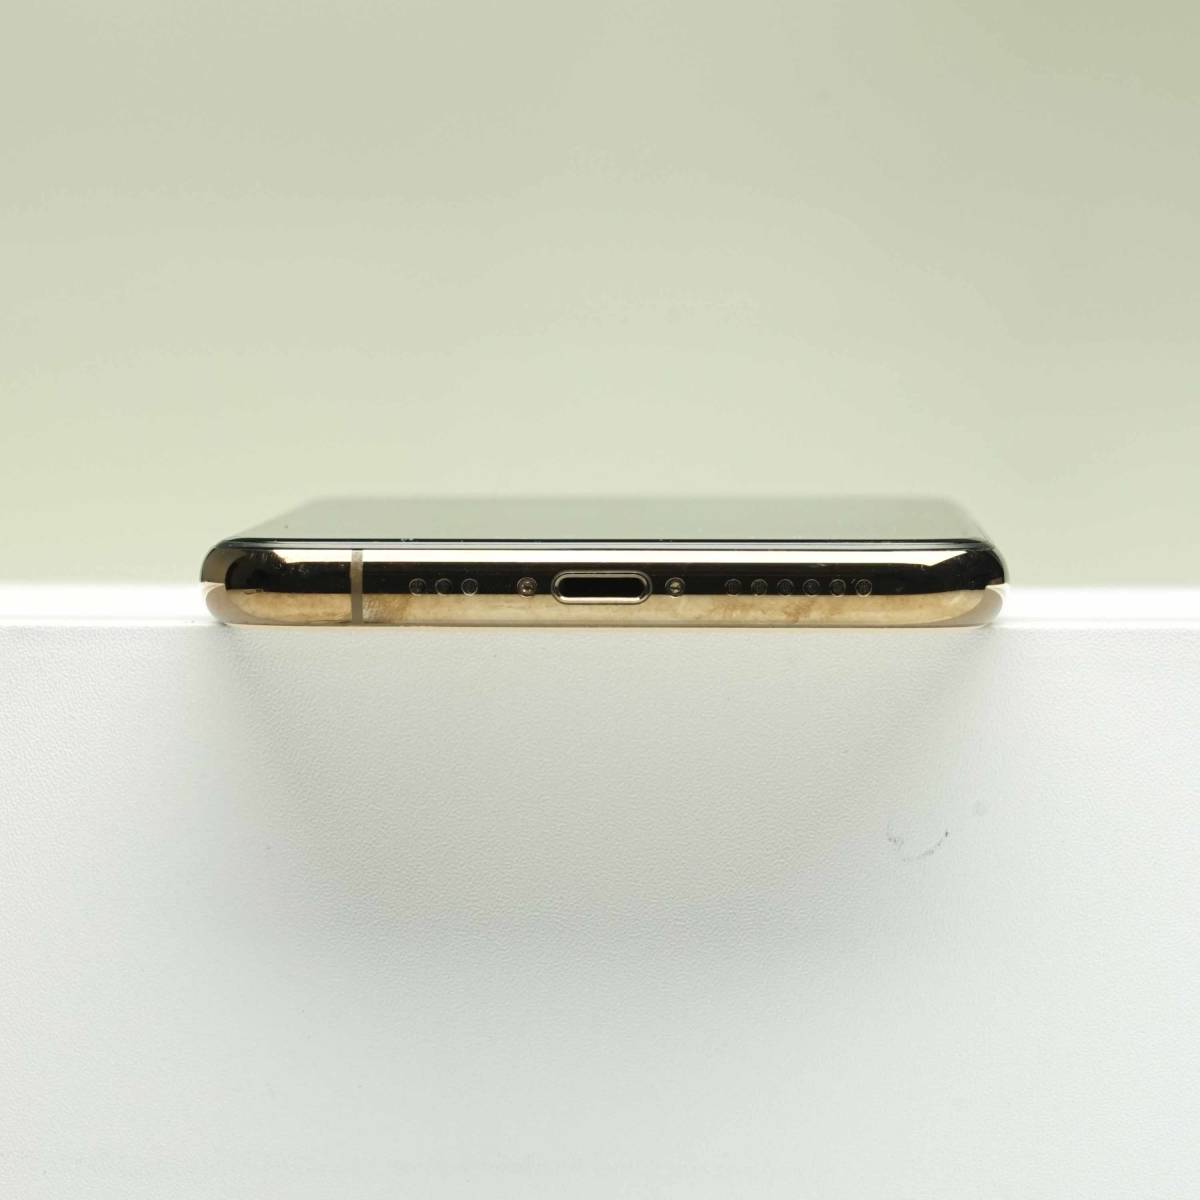 卸売 MWC52J/A ゴールド 64GB Pro 11 iPhone SIMフリー 白ロム 中古